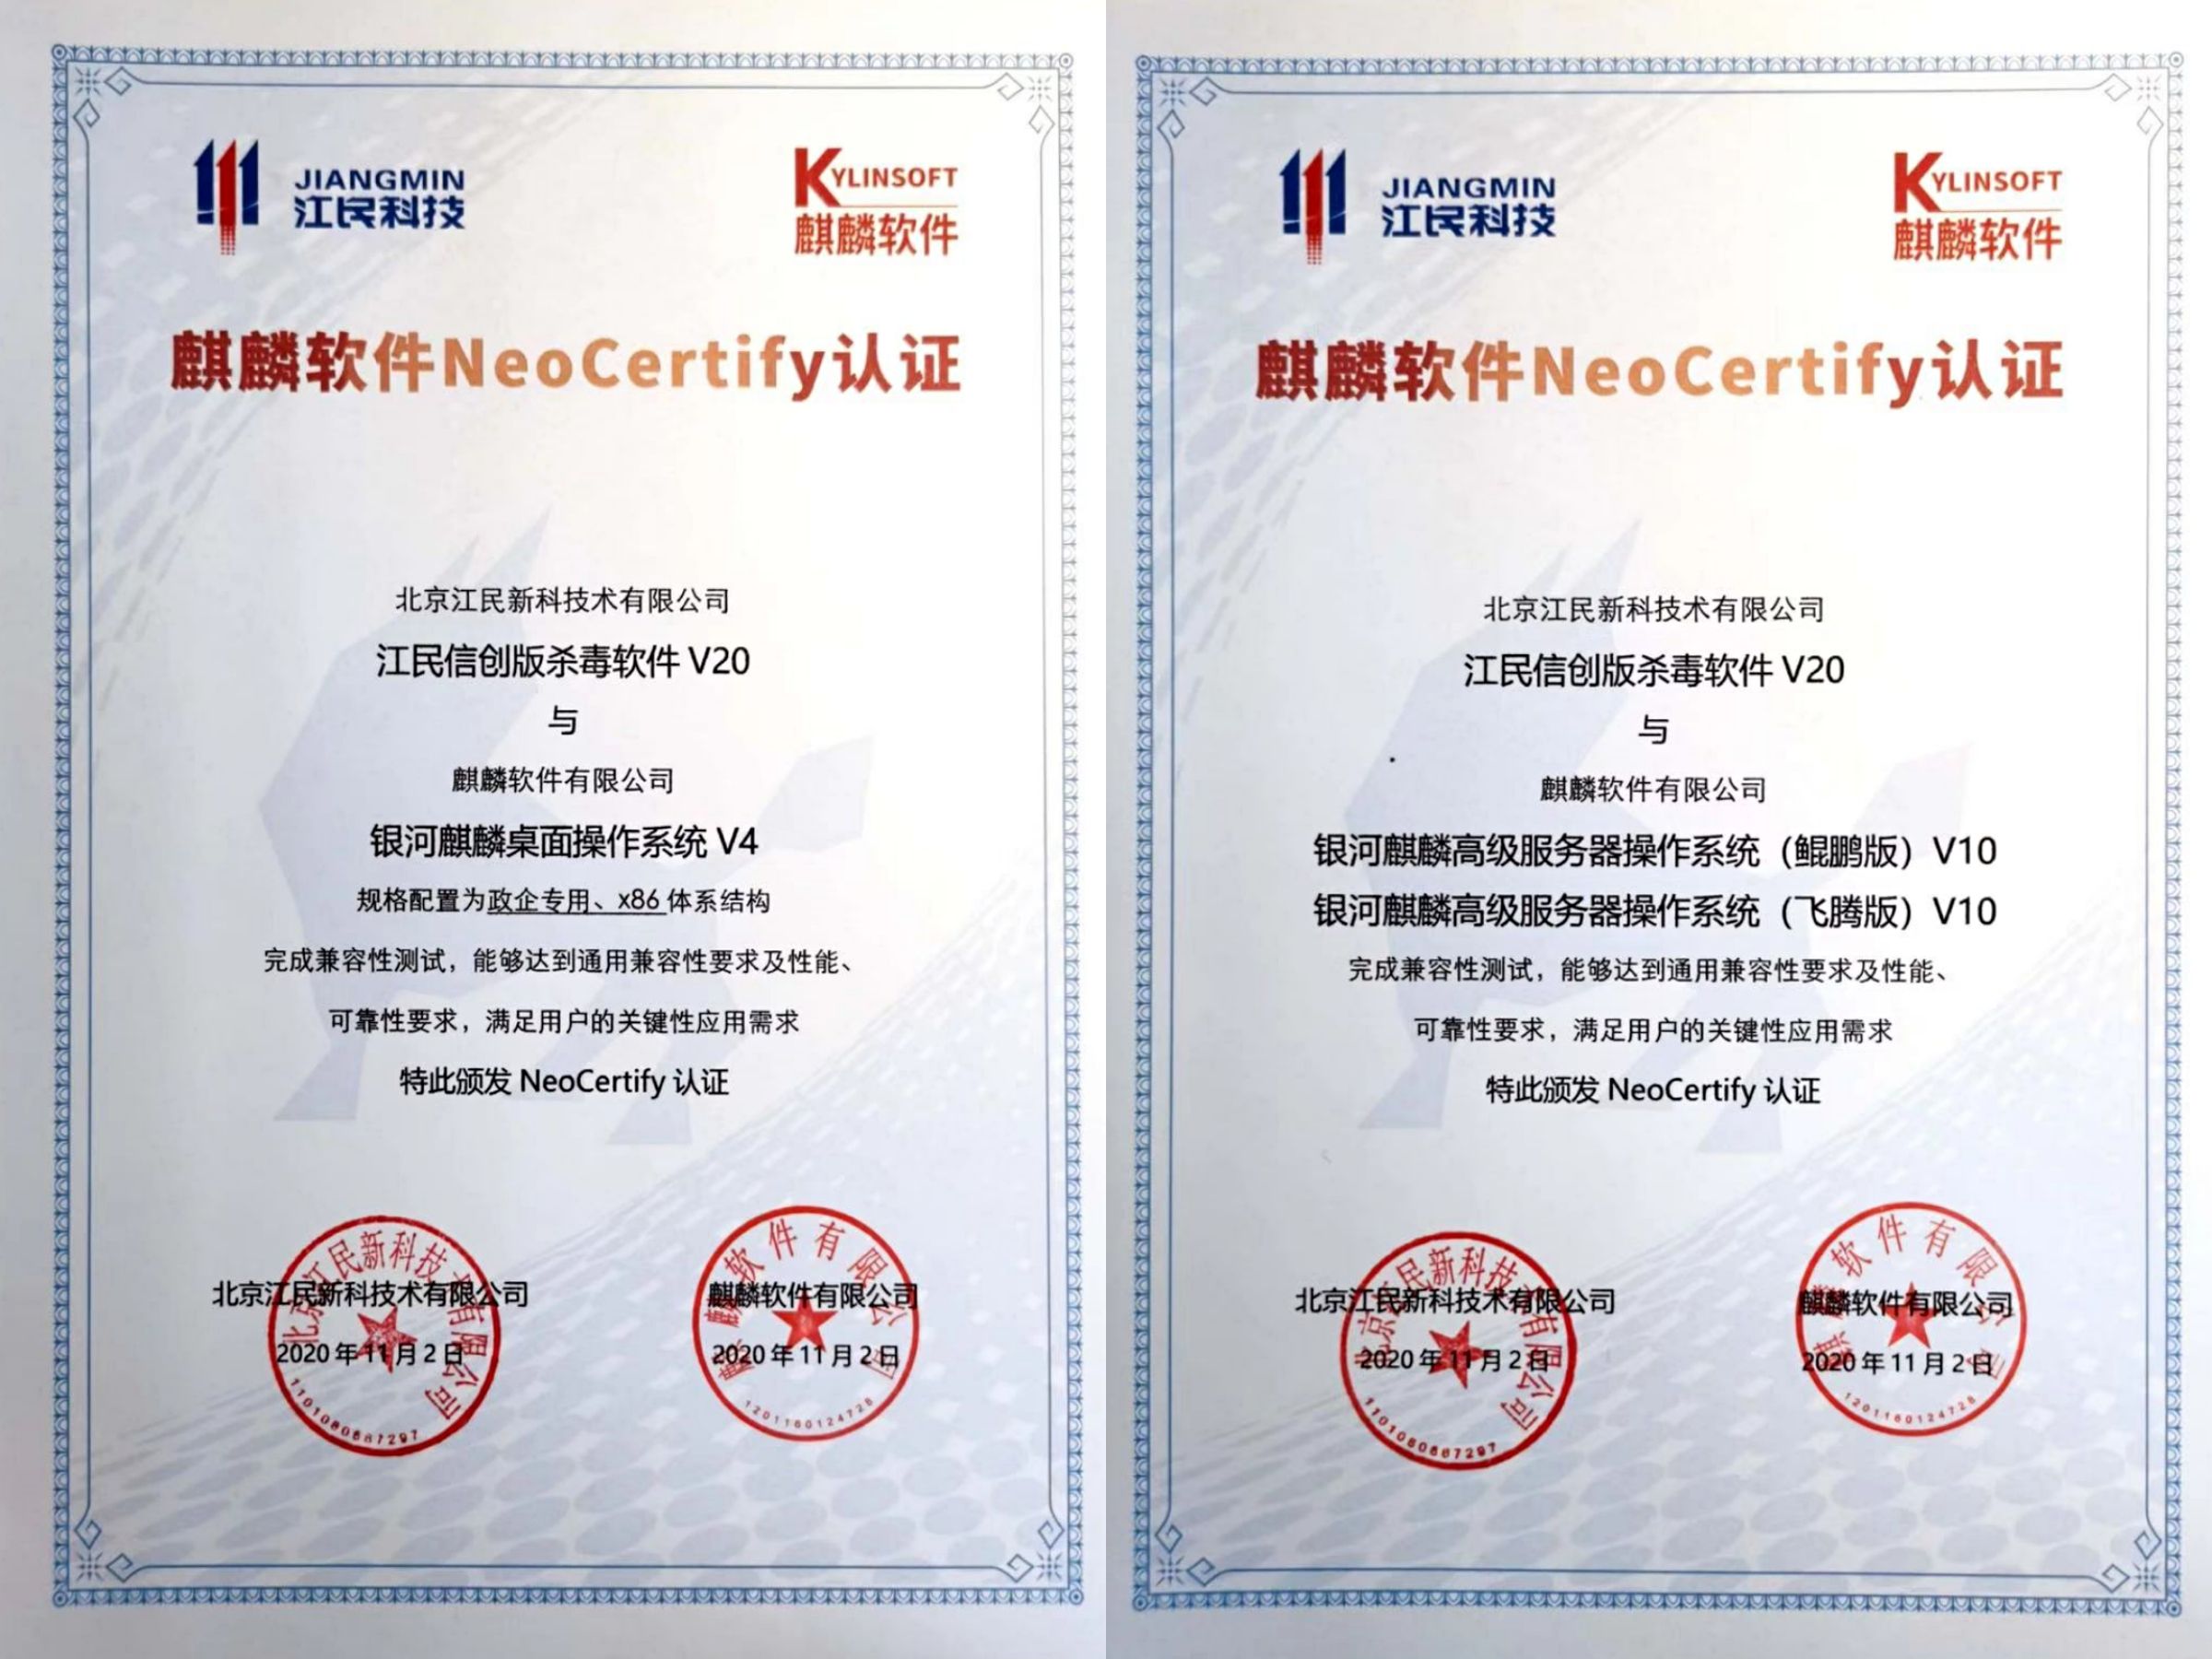 麒麟软件与江民科技完成产品互认证